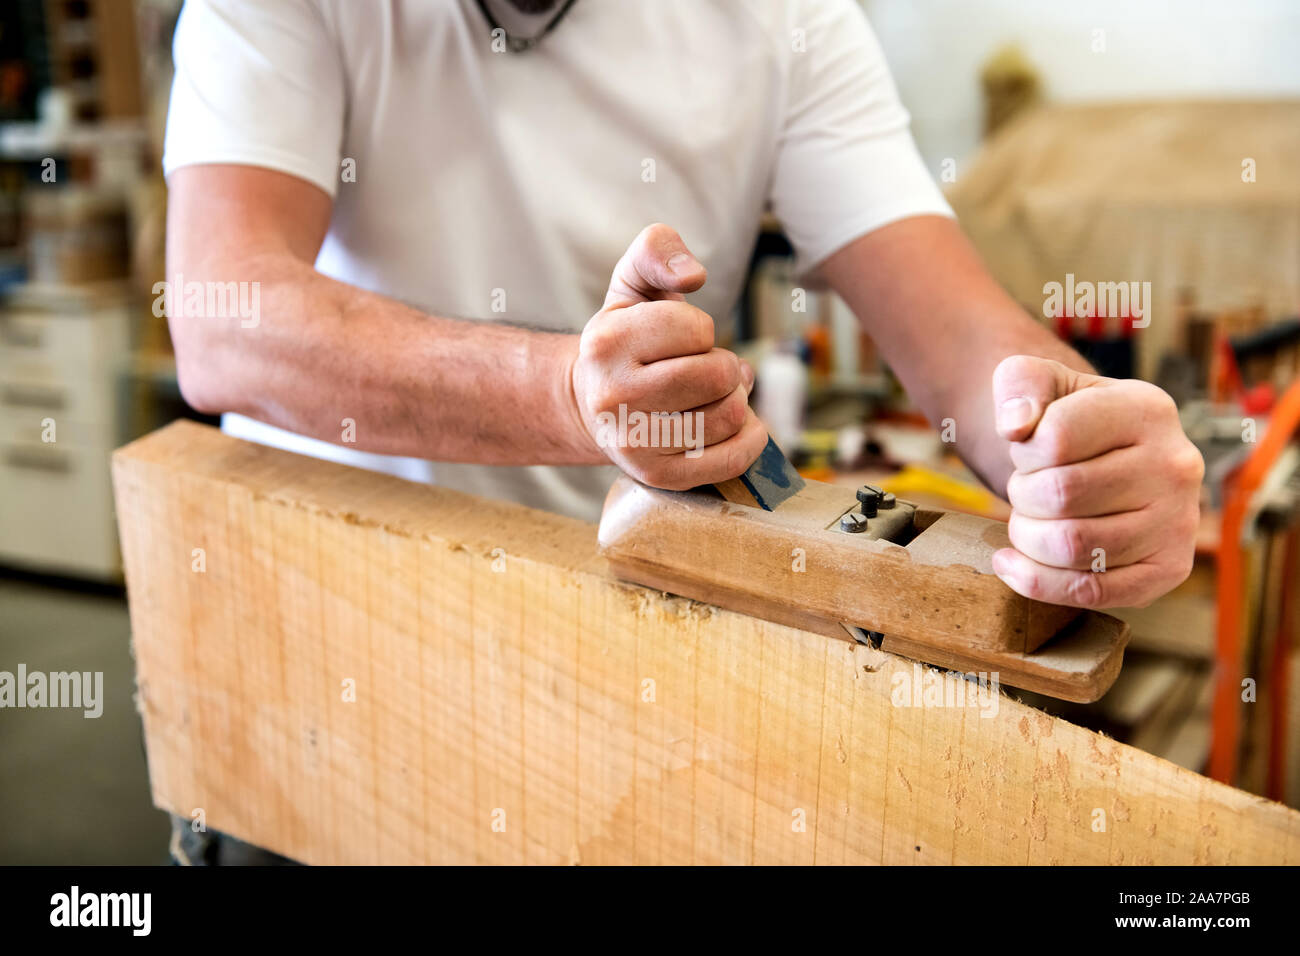 Tischler Planung der Oberfläche eines Panels von Holz mit einer manuellen Flugzeug in der Nähe zu sehen, auf seinen Händen und das Werkzeug Stockfoto